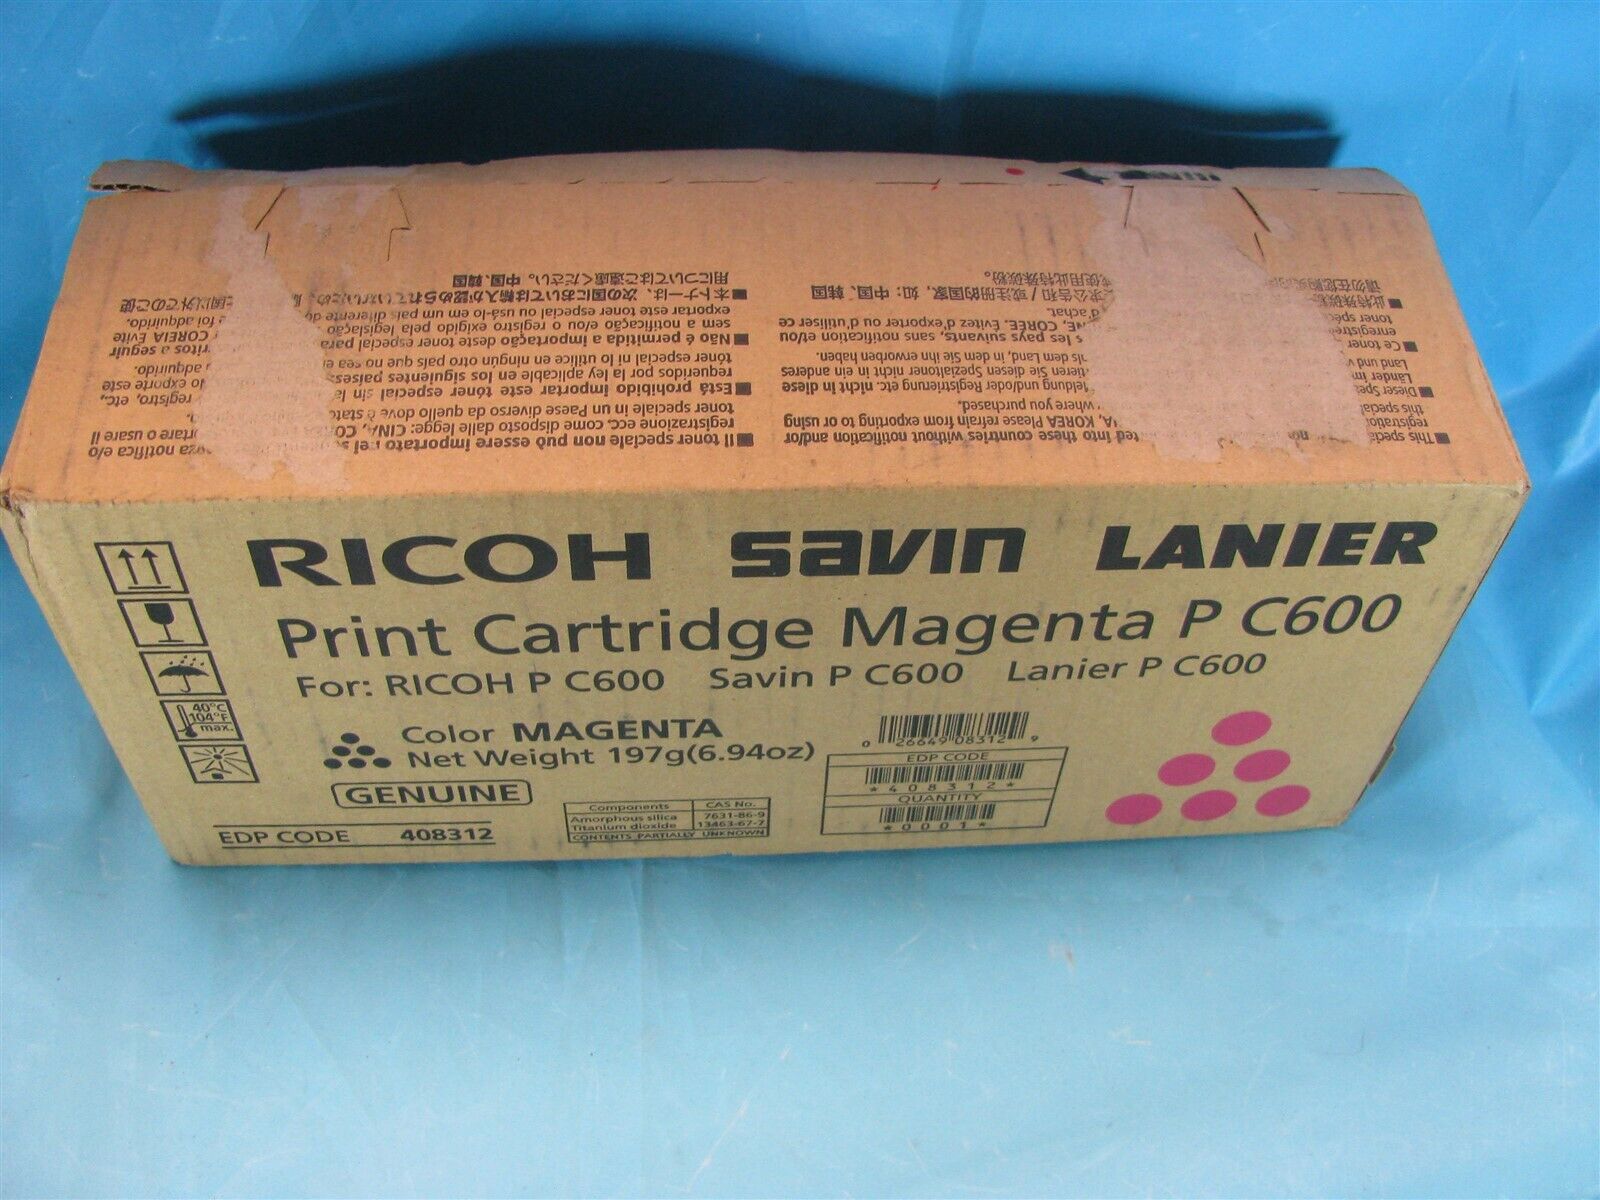 RICOH SAVIN LANIER MAGENTA PRINT CARTRIDGE P C600 EDP 408312 - NEW - 